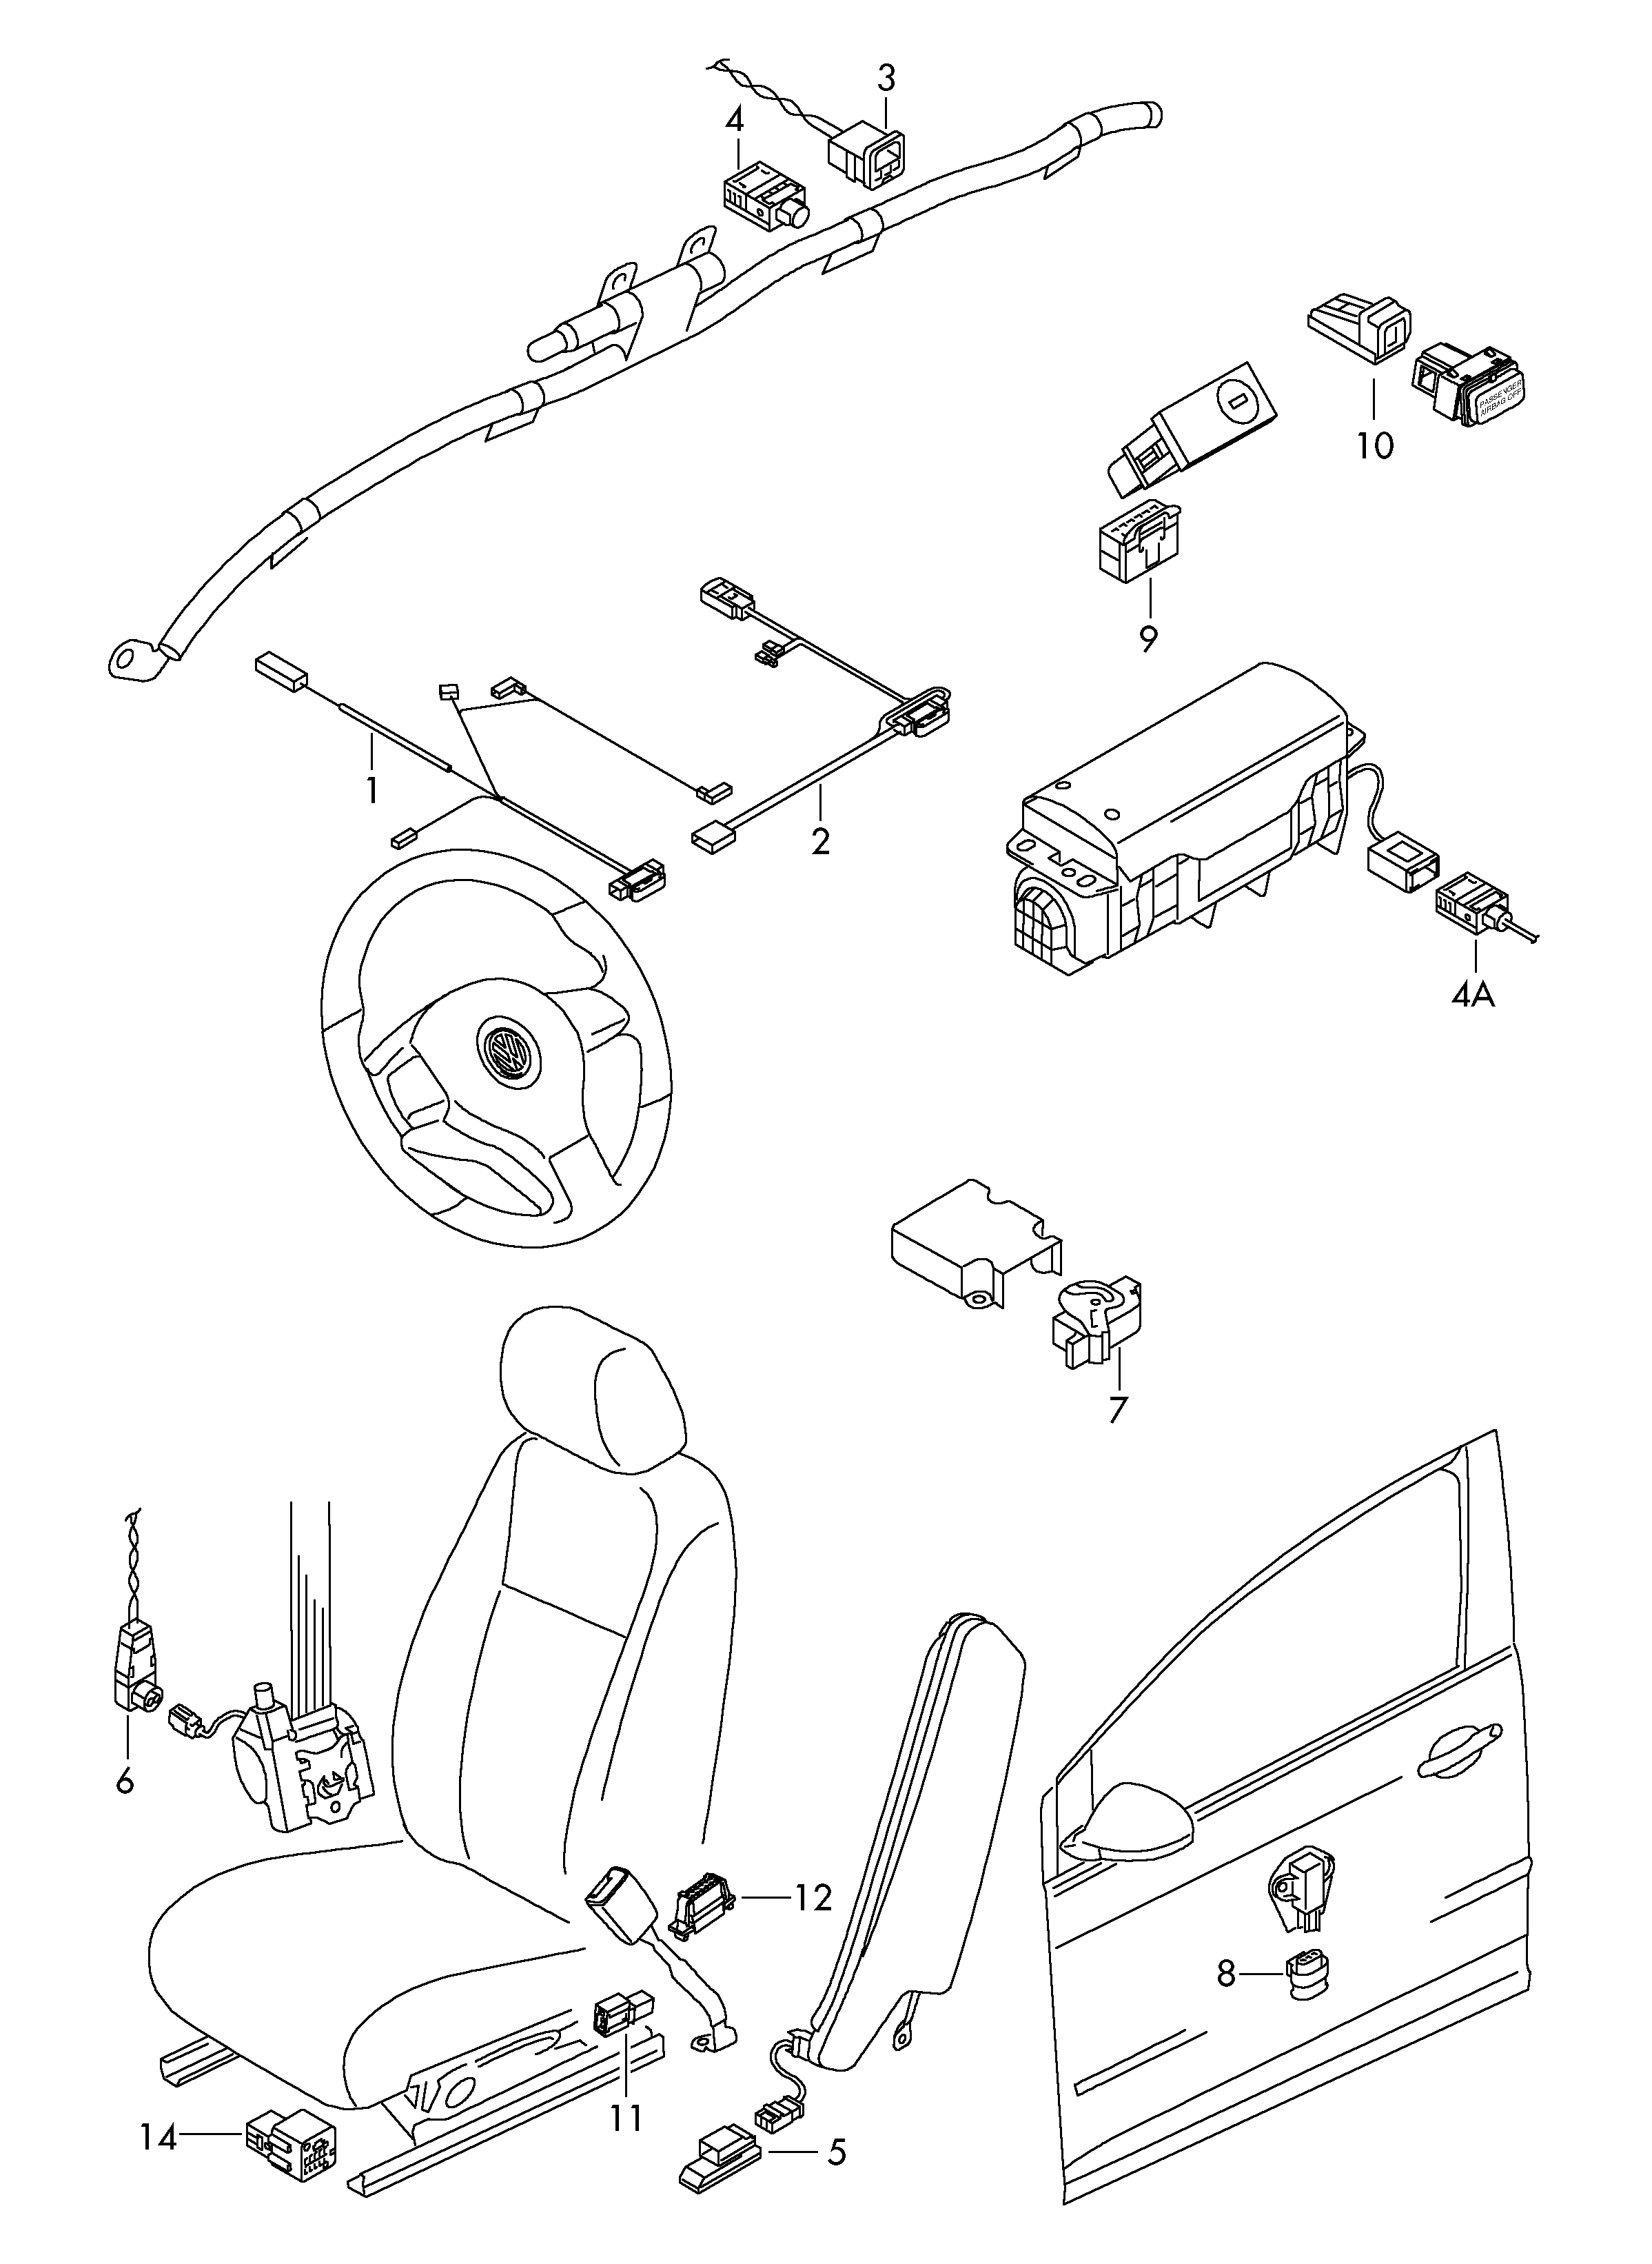 pieces detailcablage central  - Tiguan - tig